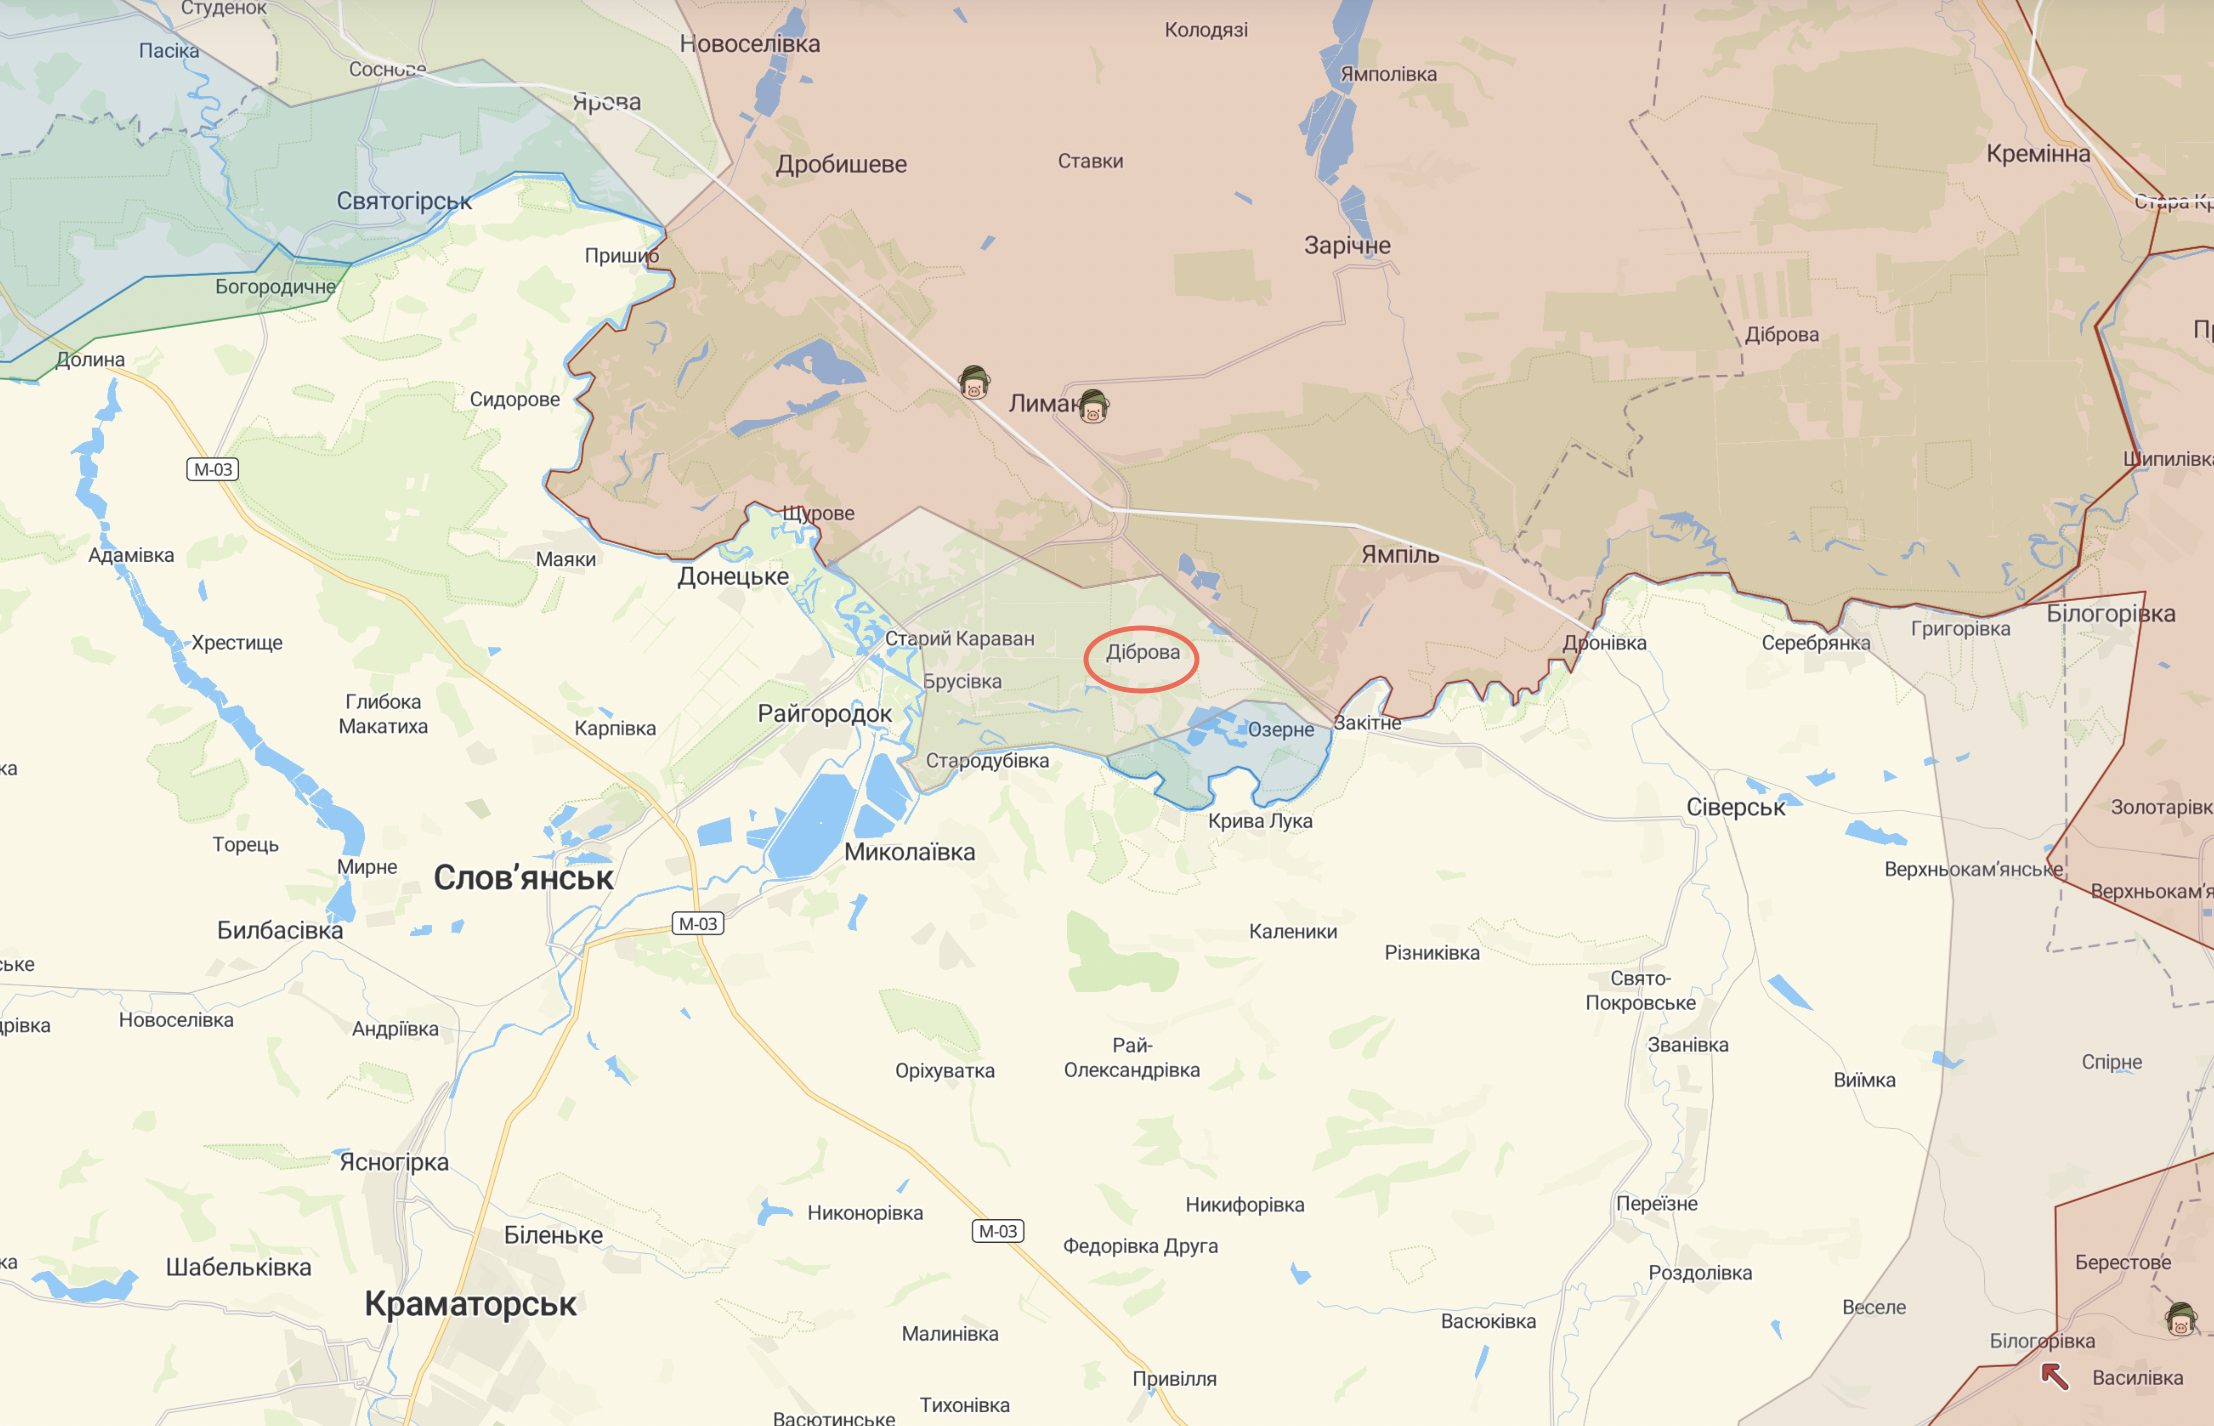 Бійці ЗСУ підняли прапор України у селах Діброва та Щурове на Донбасі (відео)